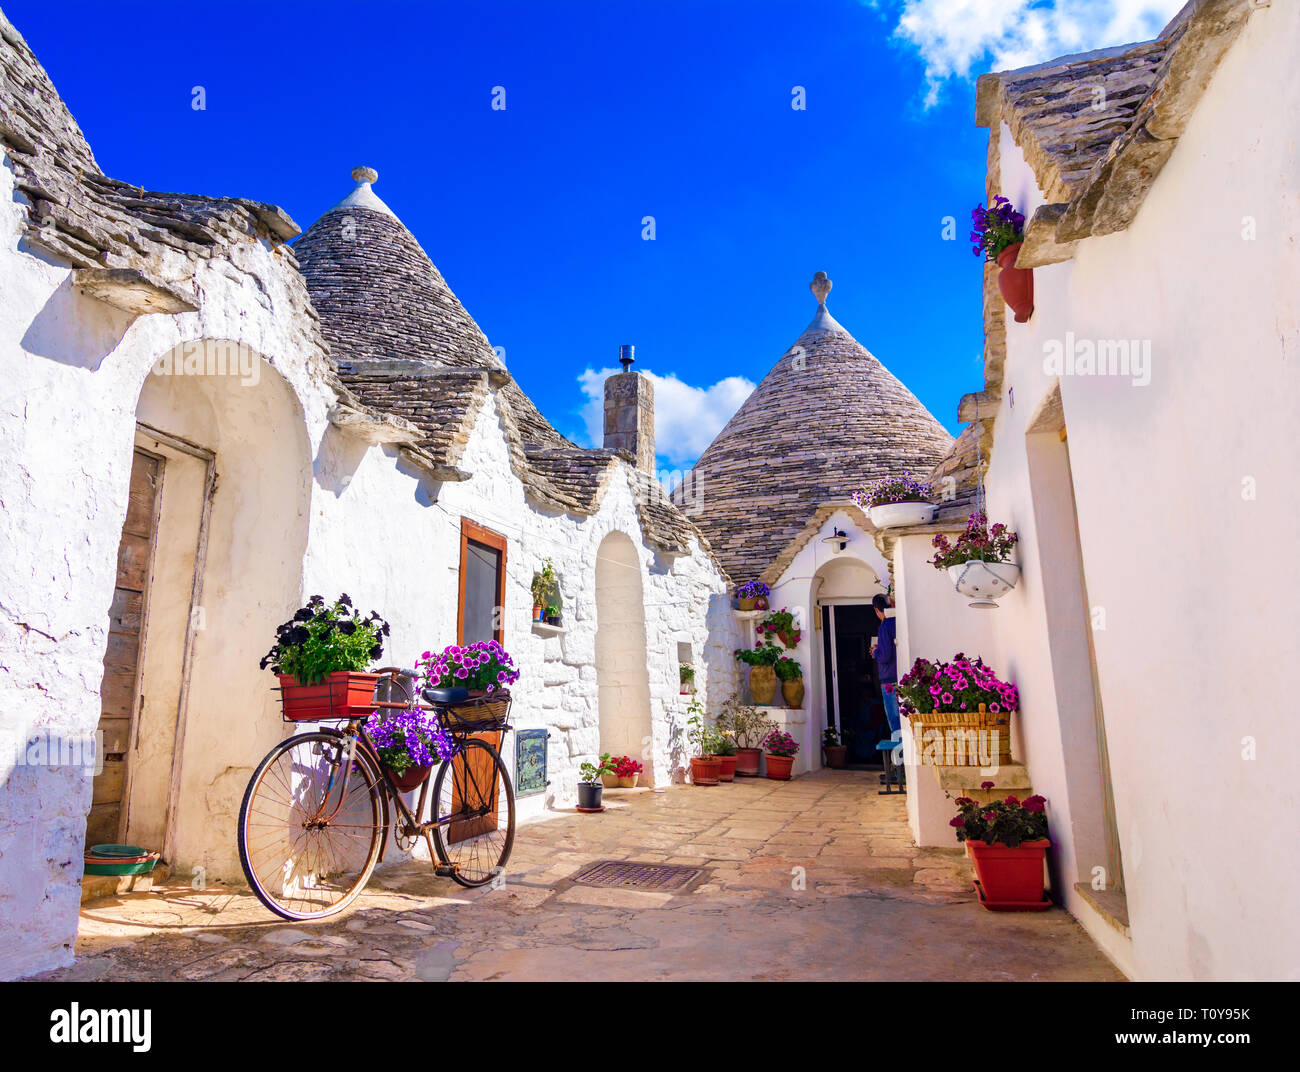 Alberobello, Puglia, Italien: Typische Häuser mit Trockenmauern und konischen Dächern gebaut, in einem schönen Tag, Apulien Stockfoto